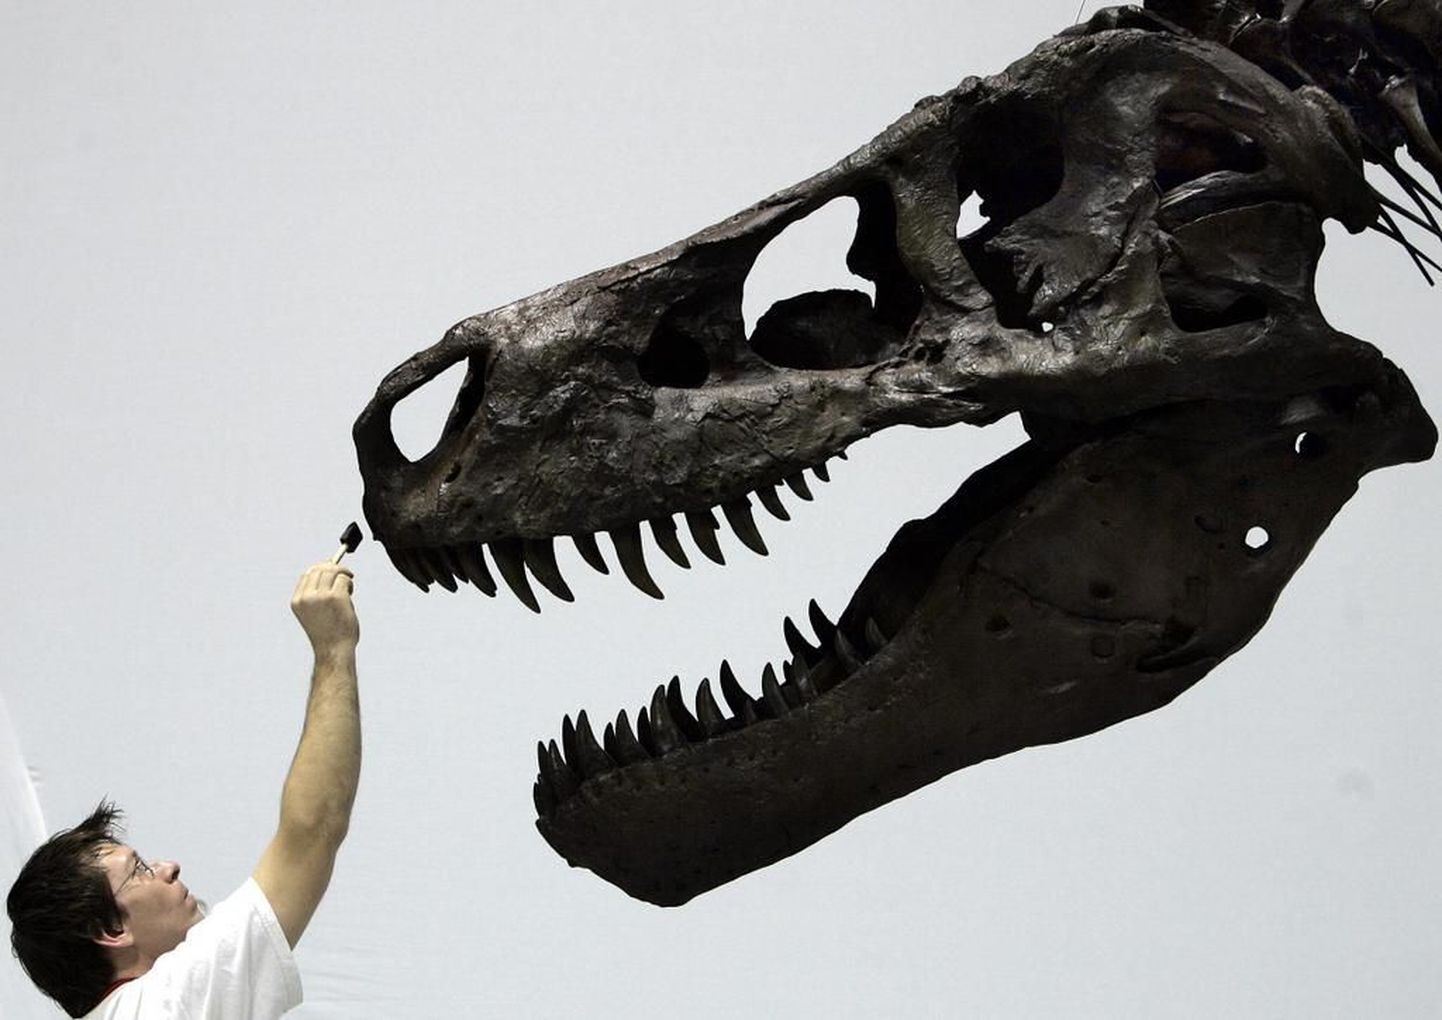 Chicago loodusloomuuseumi töötaja David Hanke annab külastajatele vaatamiseks välja pandud Tyrannosaurus rexi luustikule viimast lihvi.